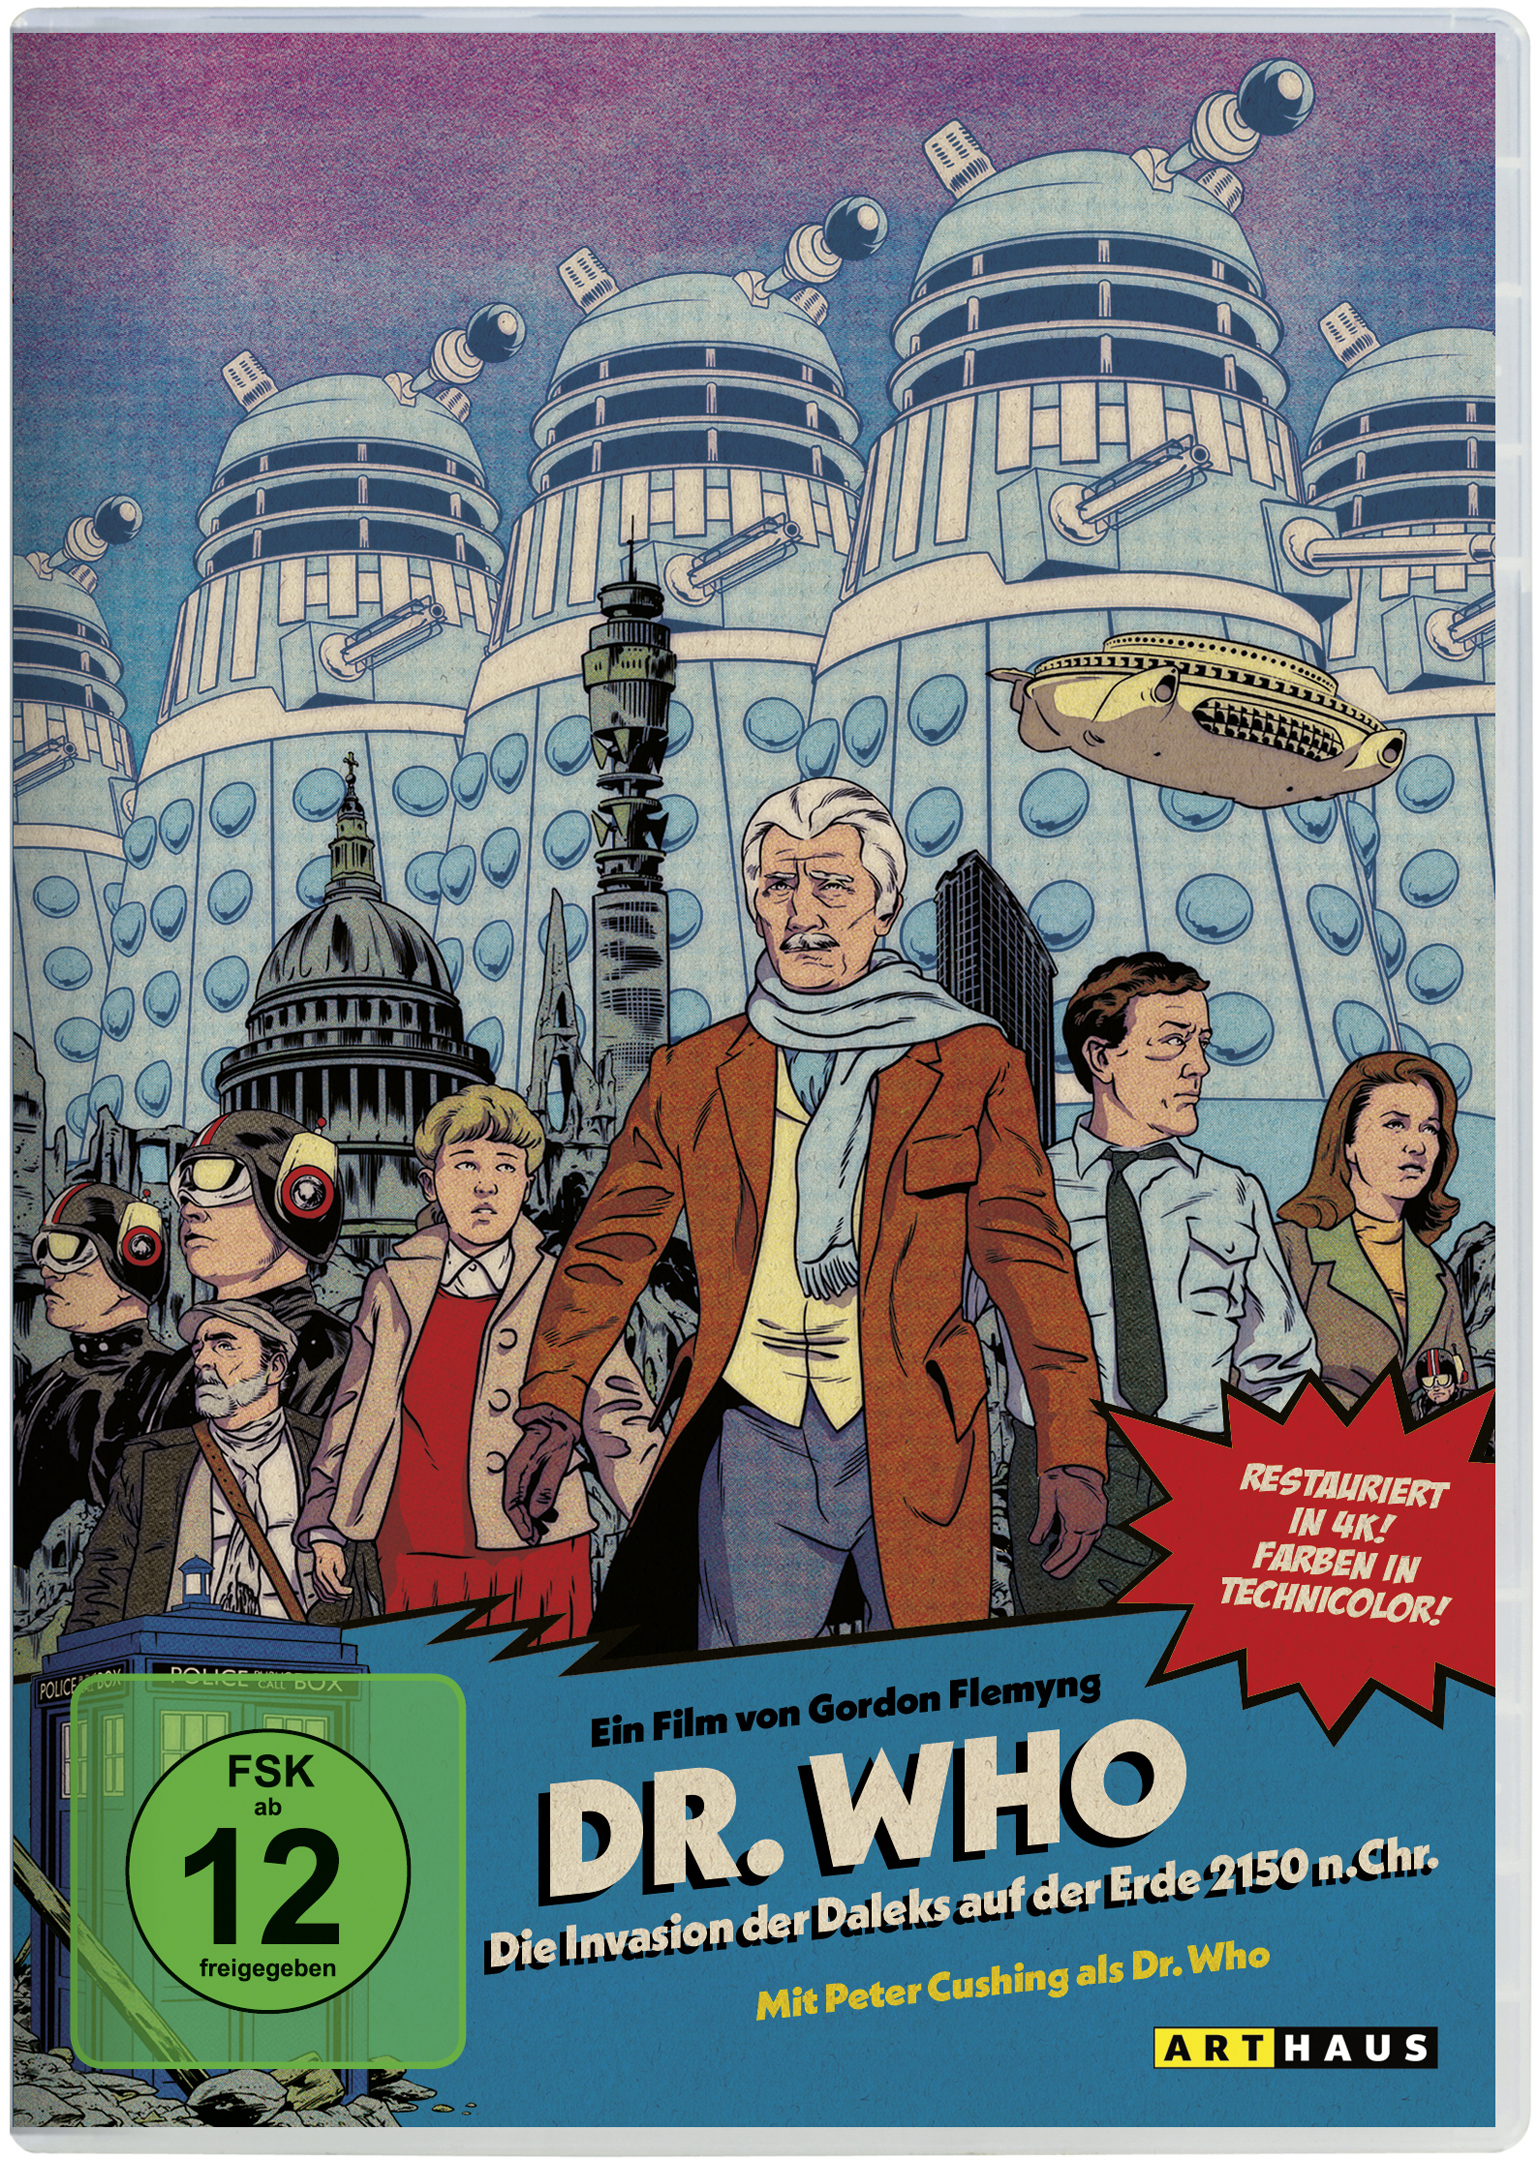 Invasion Daleks auf Who: Dr. Die 2150 DVD der Erde Chr. der n.